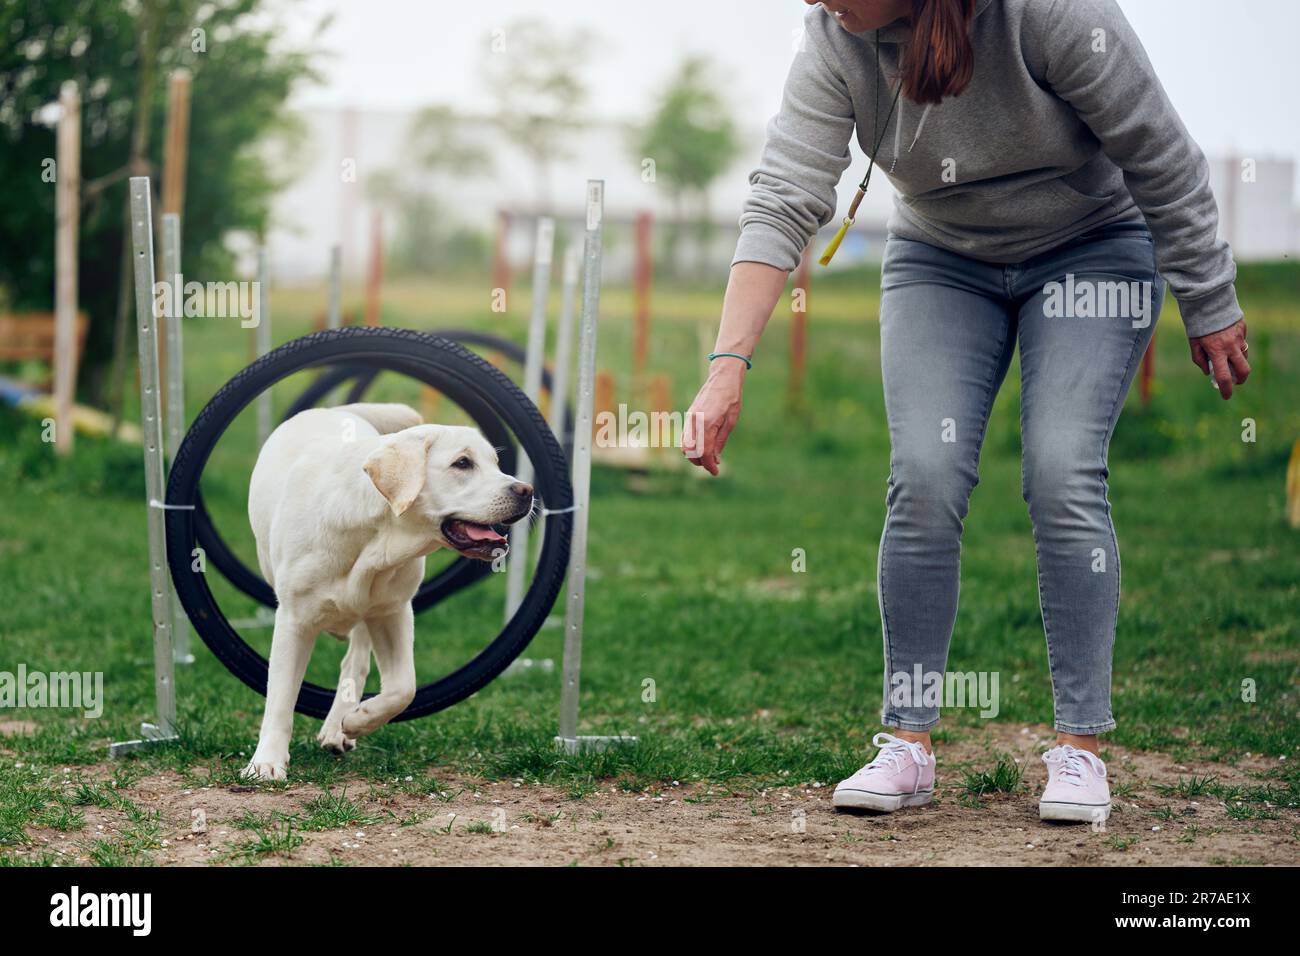 Une femme s'empresse de jouer avec son chien agilité marchant à travers des anneaux ou des pneus comme un obstacle Banque D'Images